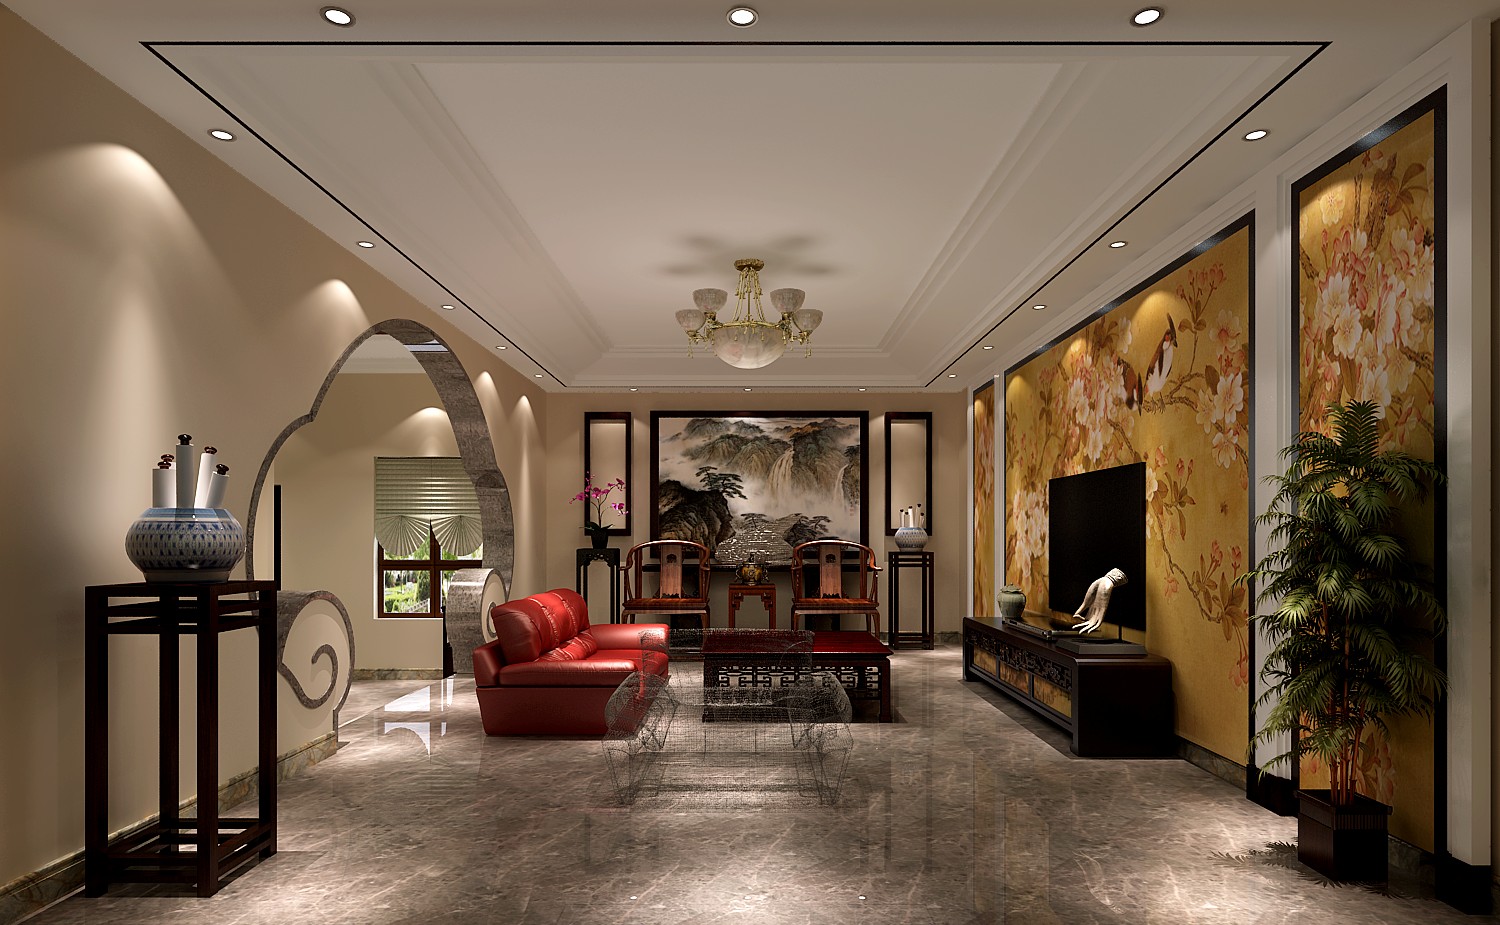 公寓 四合院 三居 客厅图片来自高度国际装饰宋增会在四合院506平米中式风格的分享